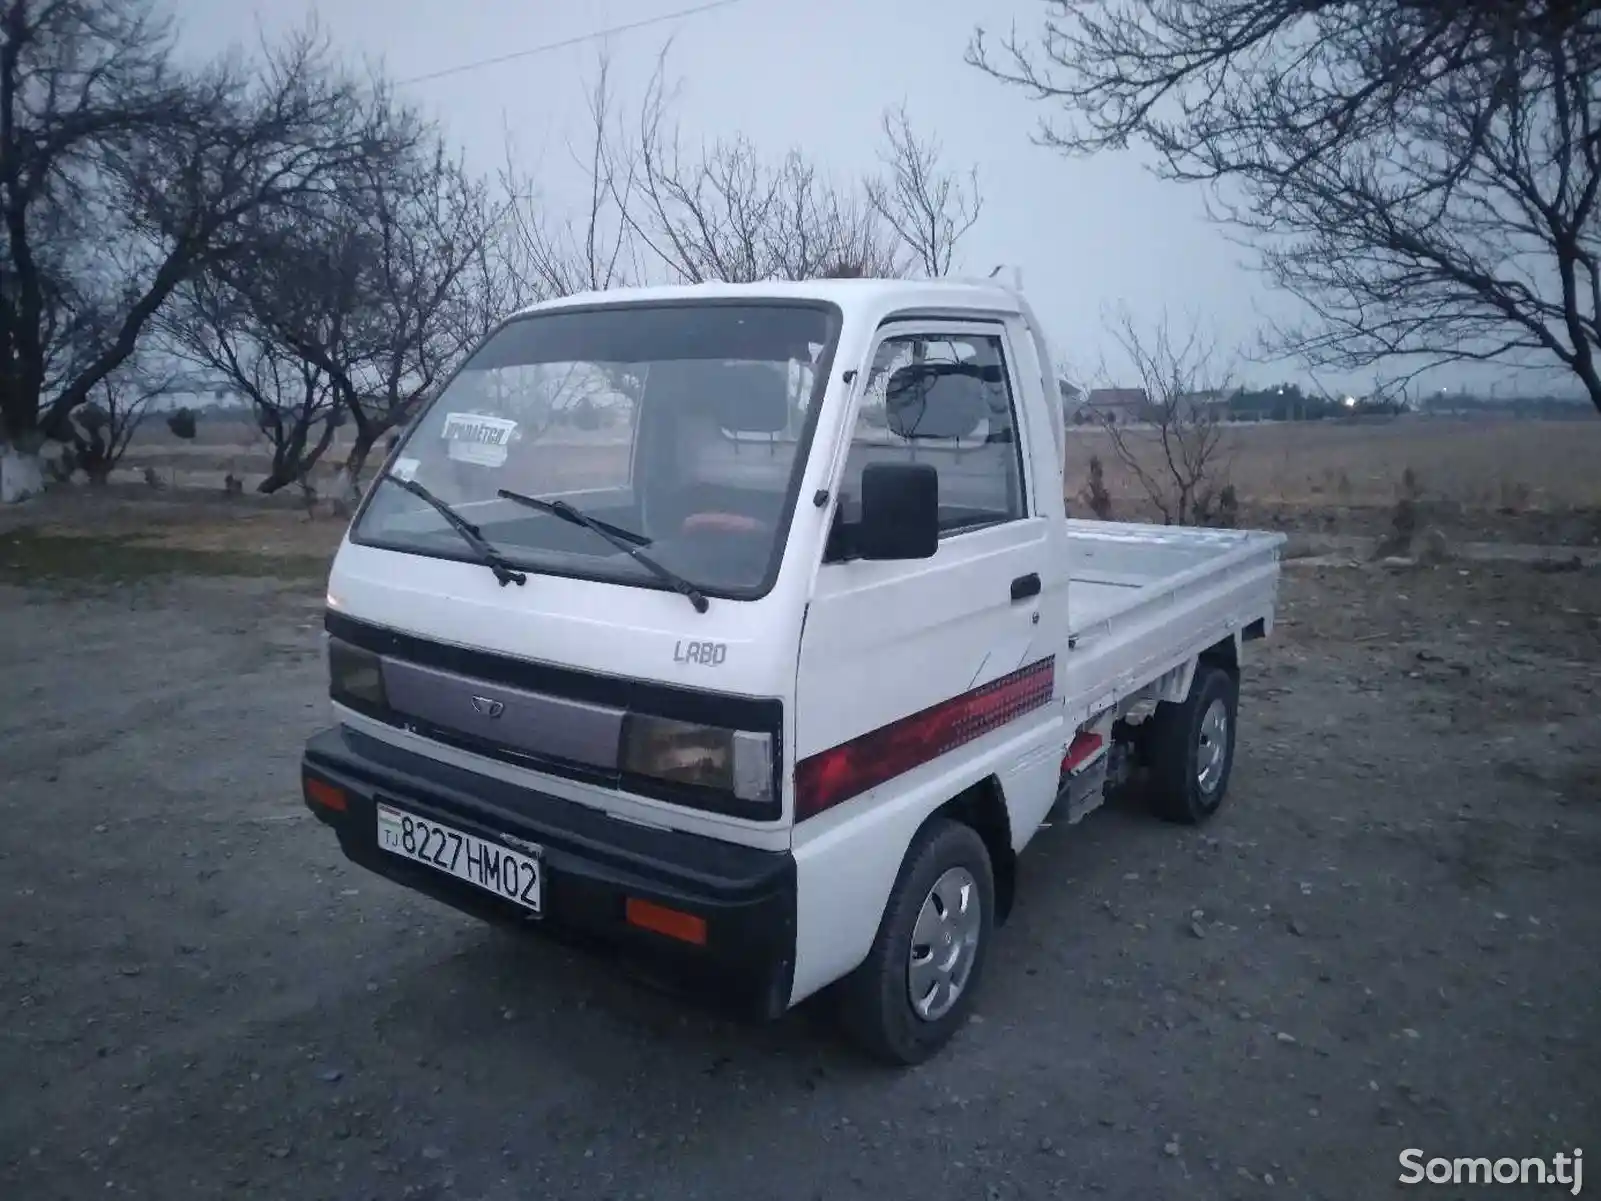 Бортовой автомобиль Daewoo Labo, 1994-1